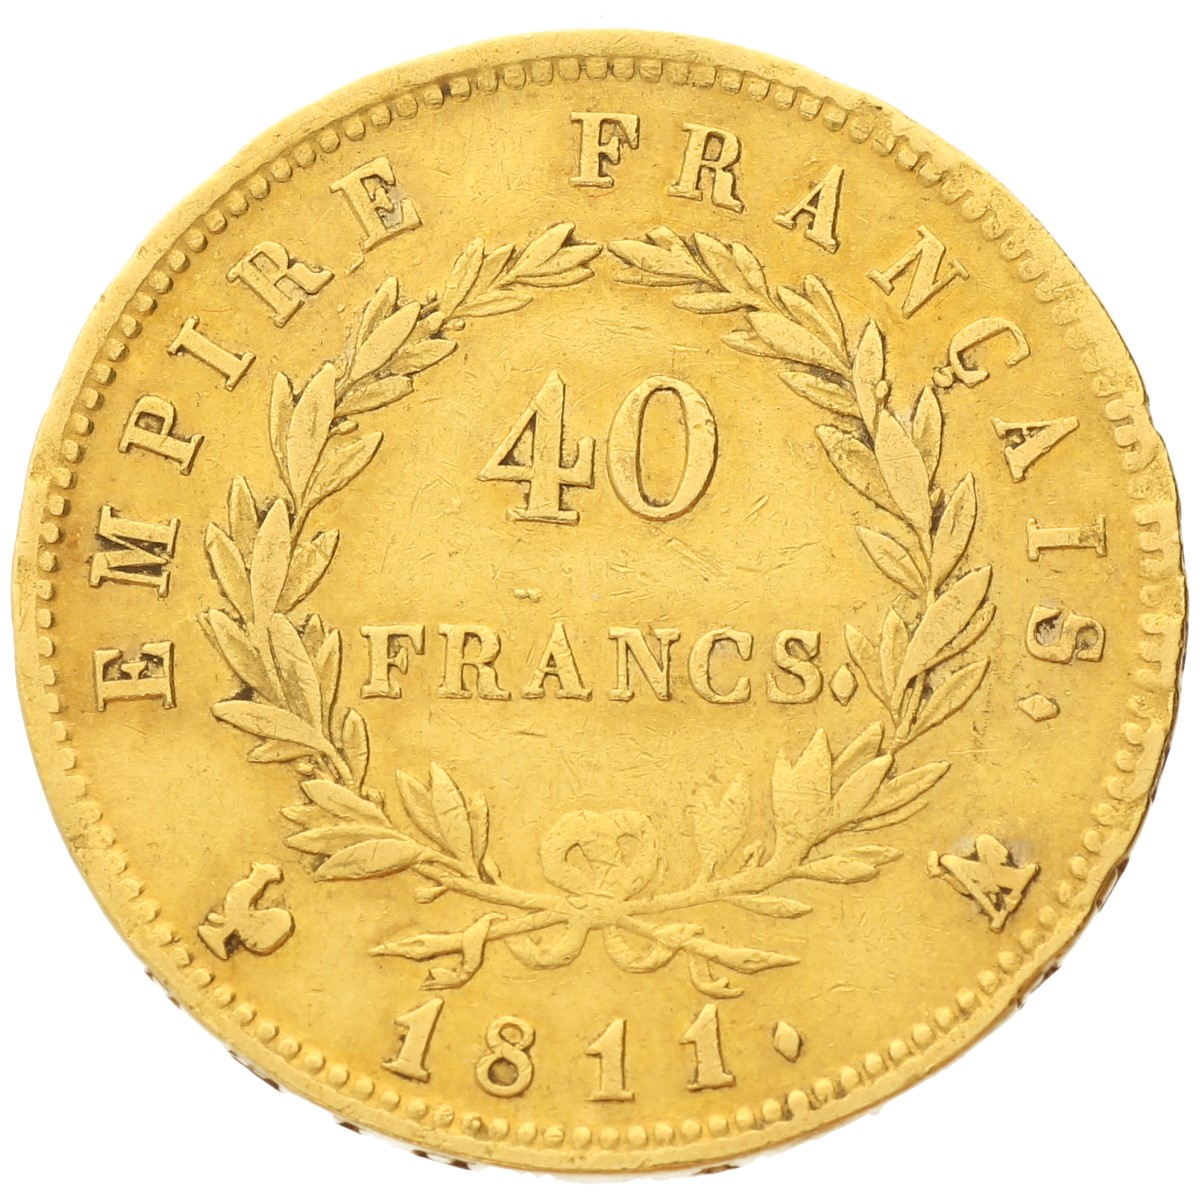 France - 40 francs - 1811 - A